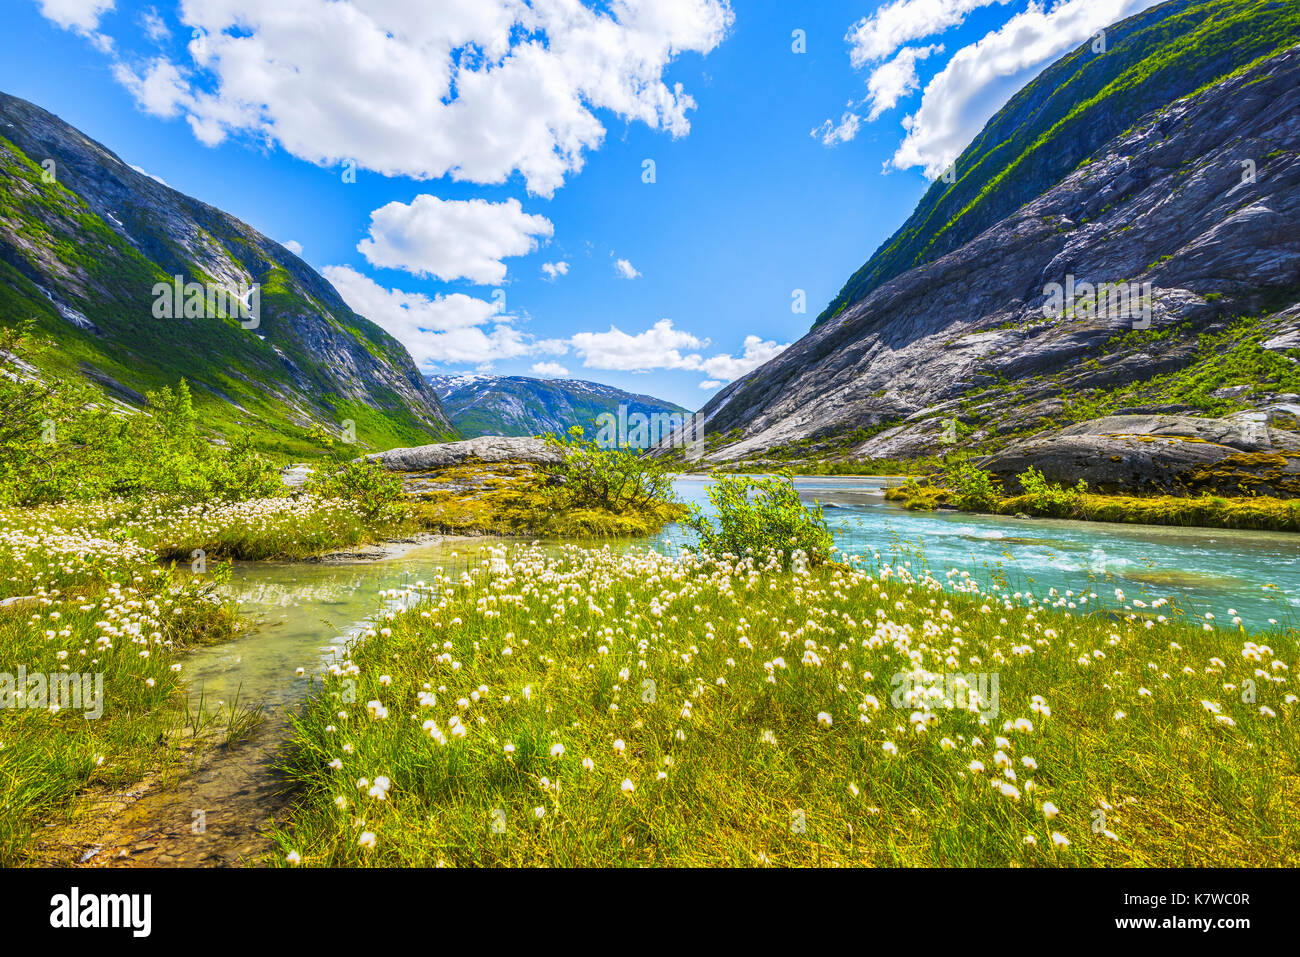 Au coton de l'Nigardsbreenvatnet, lac du glacier Nigardsbreen, Norvège, Scandinavie Banque D'Images